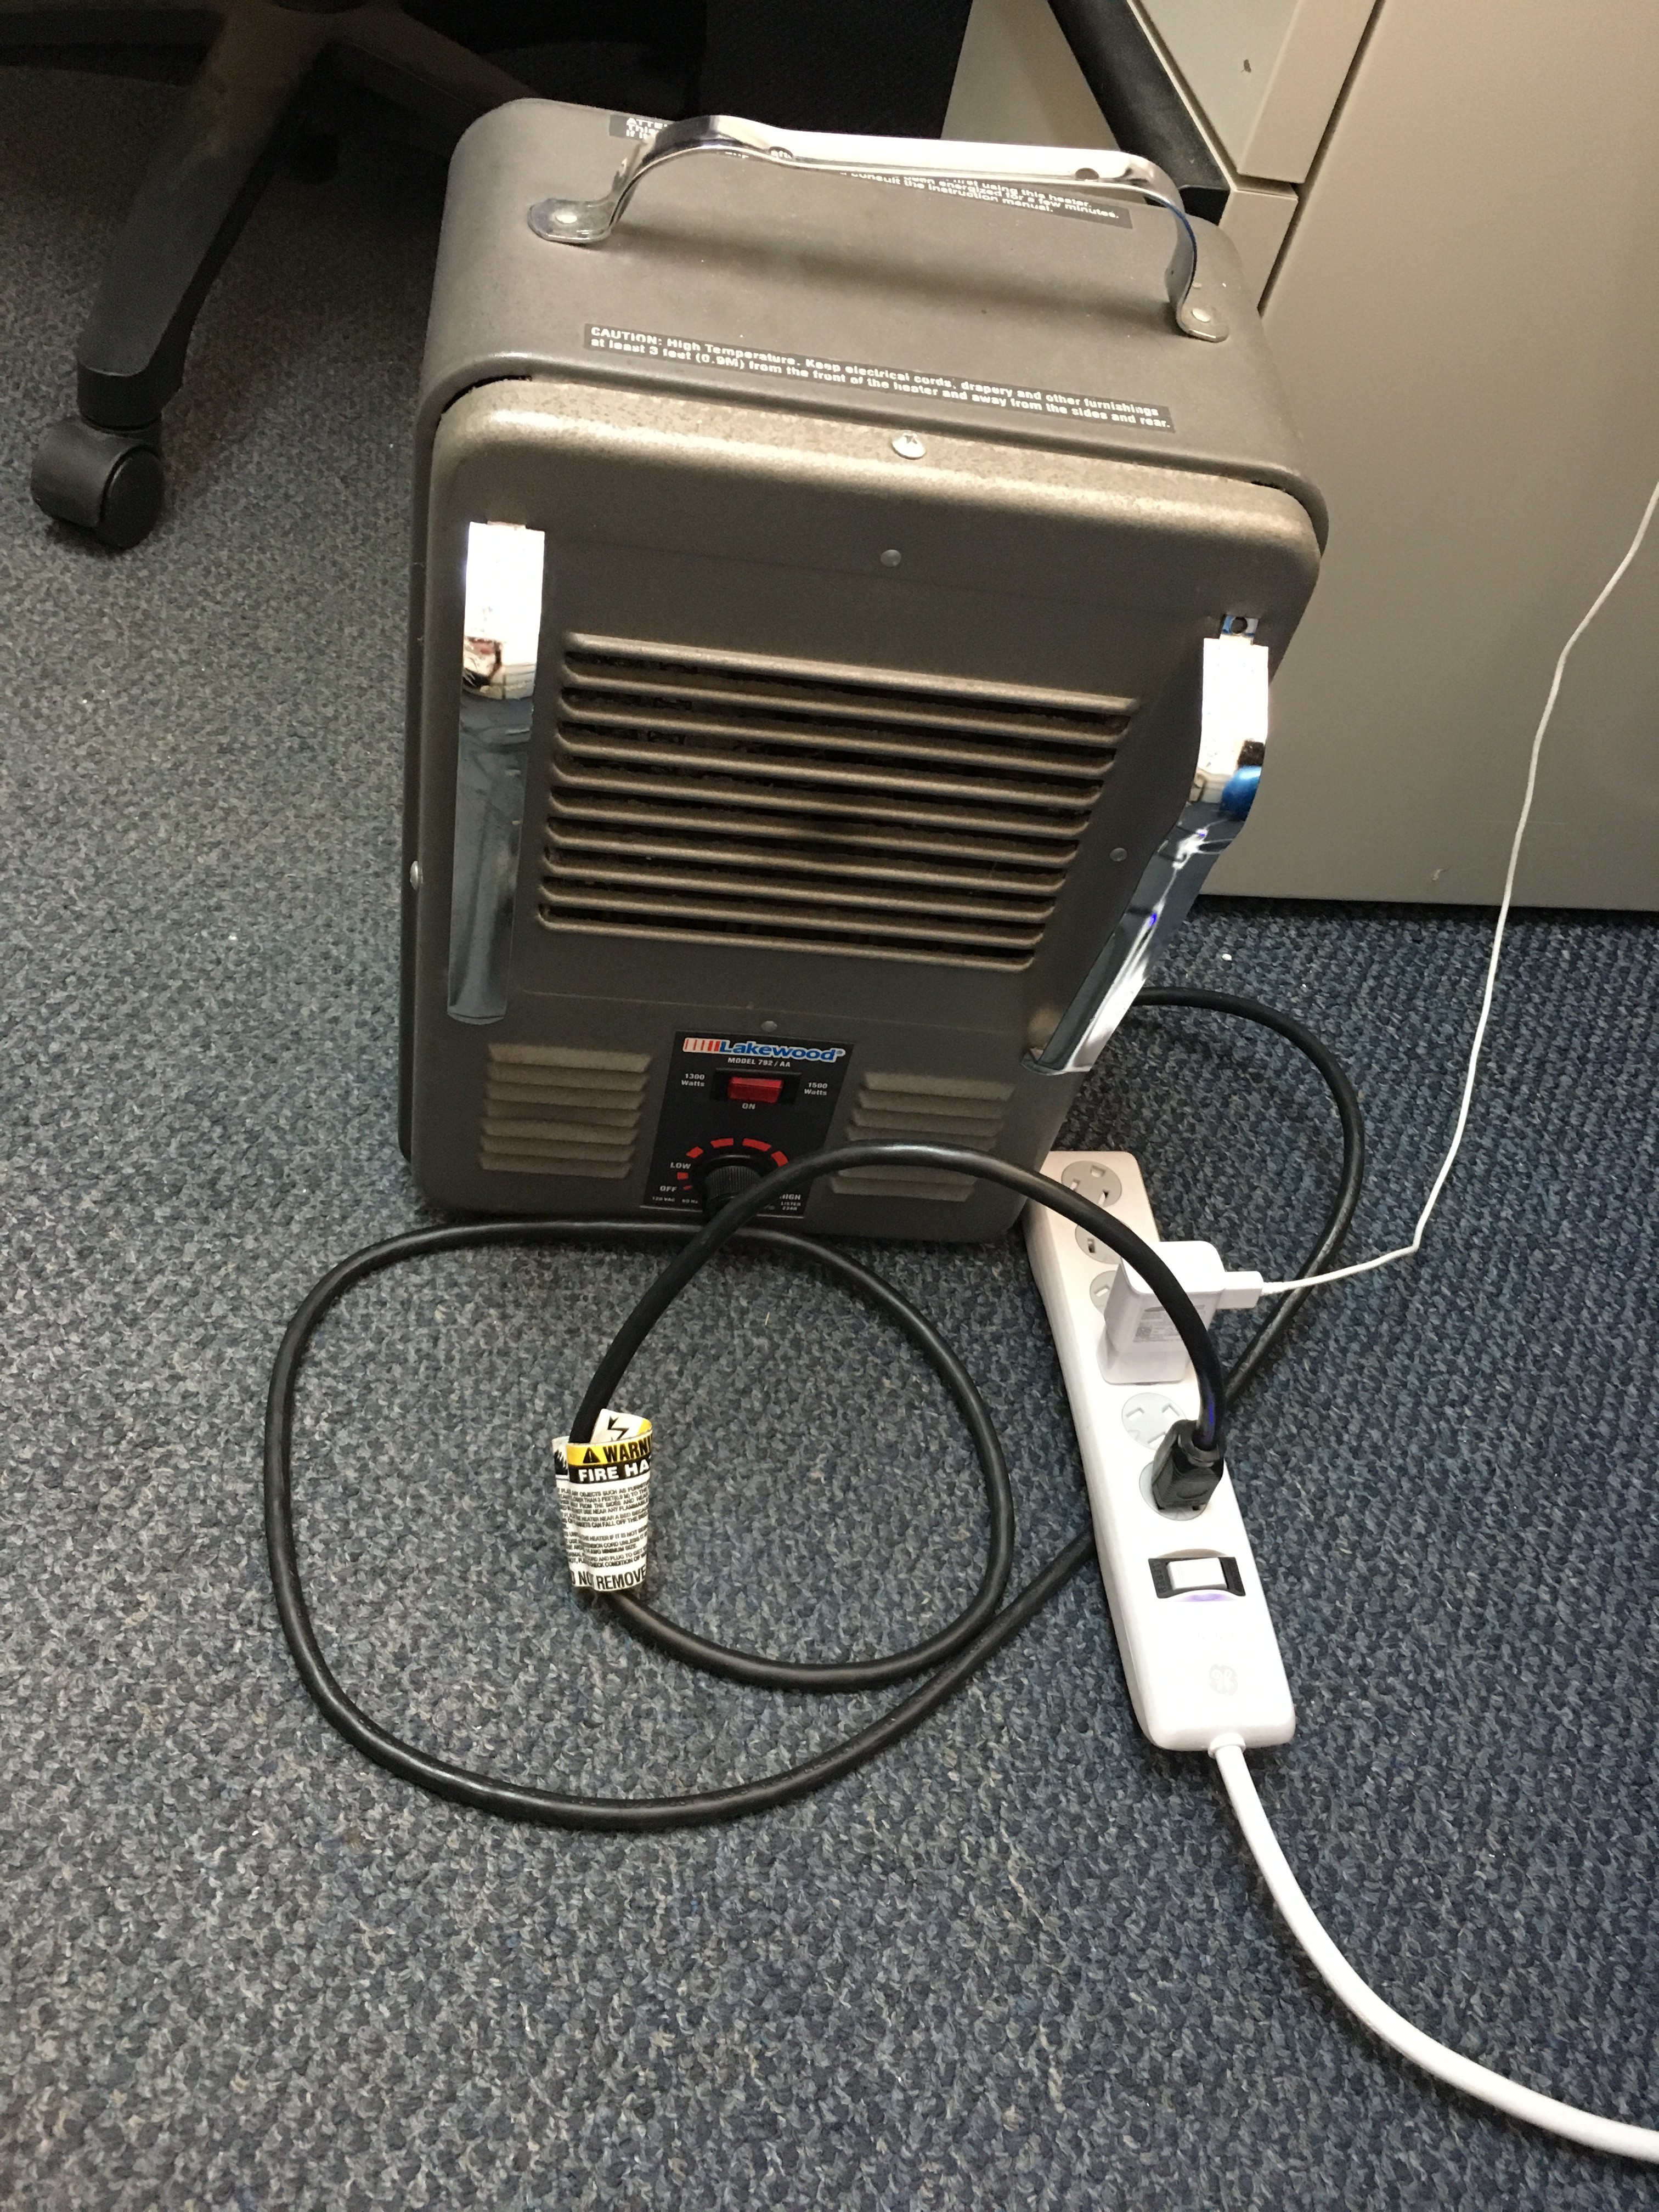 extension cord for 1500 watt heater